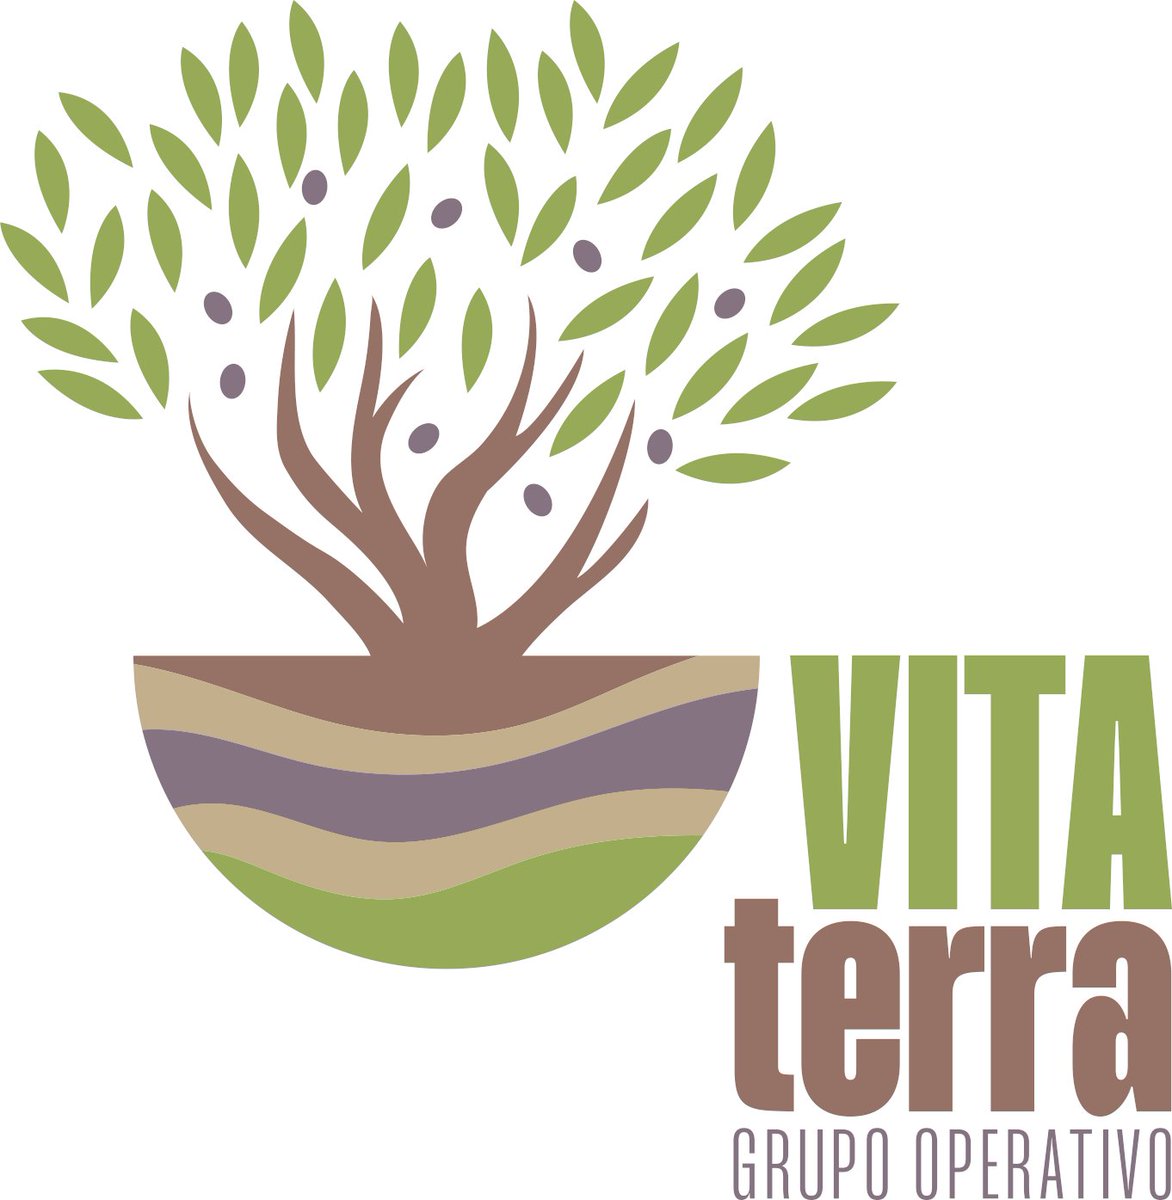 #vitaterra, el grupo operativo que transformará los suelos de olivar conductivos e infértiles en suelos “vivos” ya tiene logo‼️

¿Os gusta? 

Actividad financiada por #FEADER @AgriculturAnd

🧐 @redPAC_ @EIPAGRI_SP